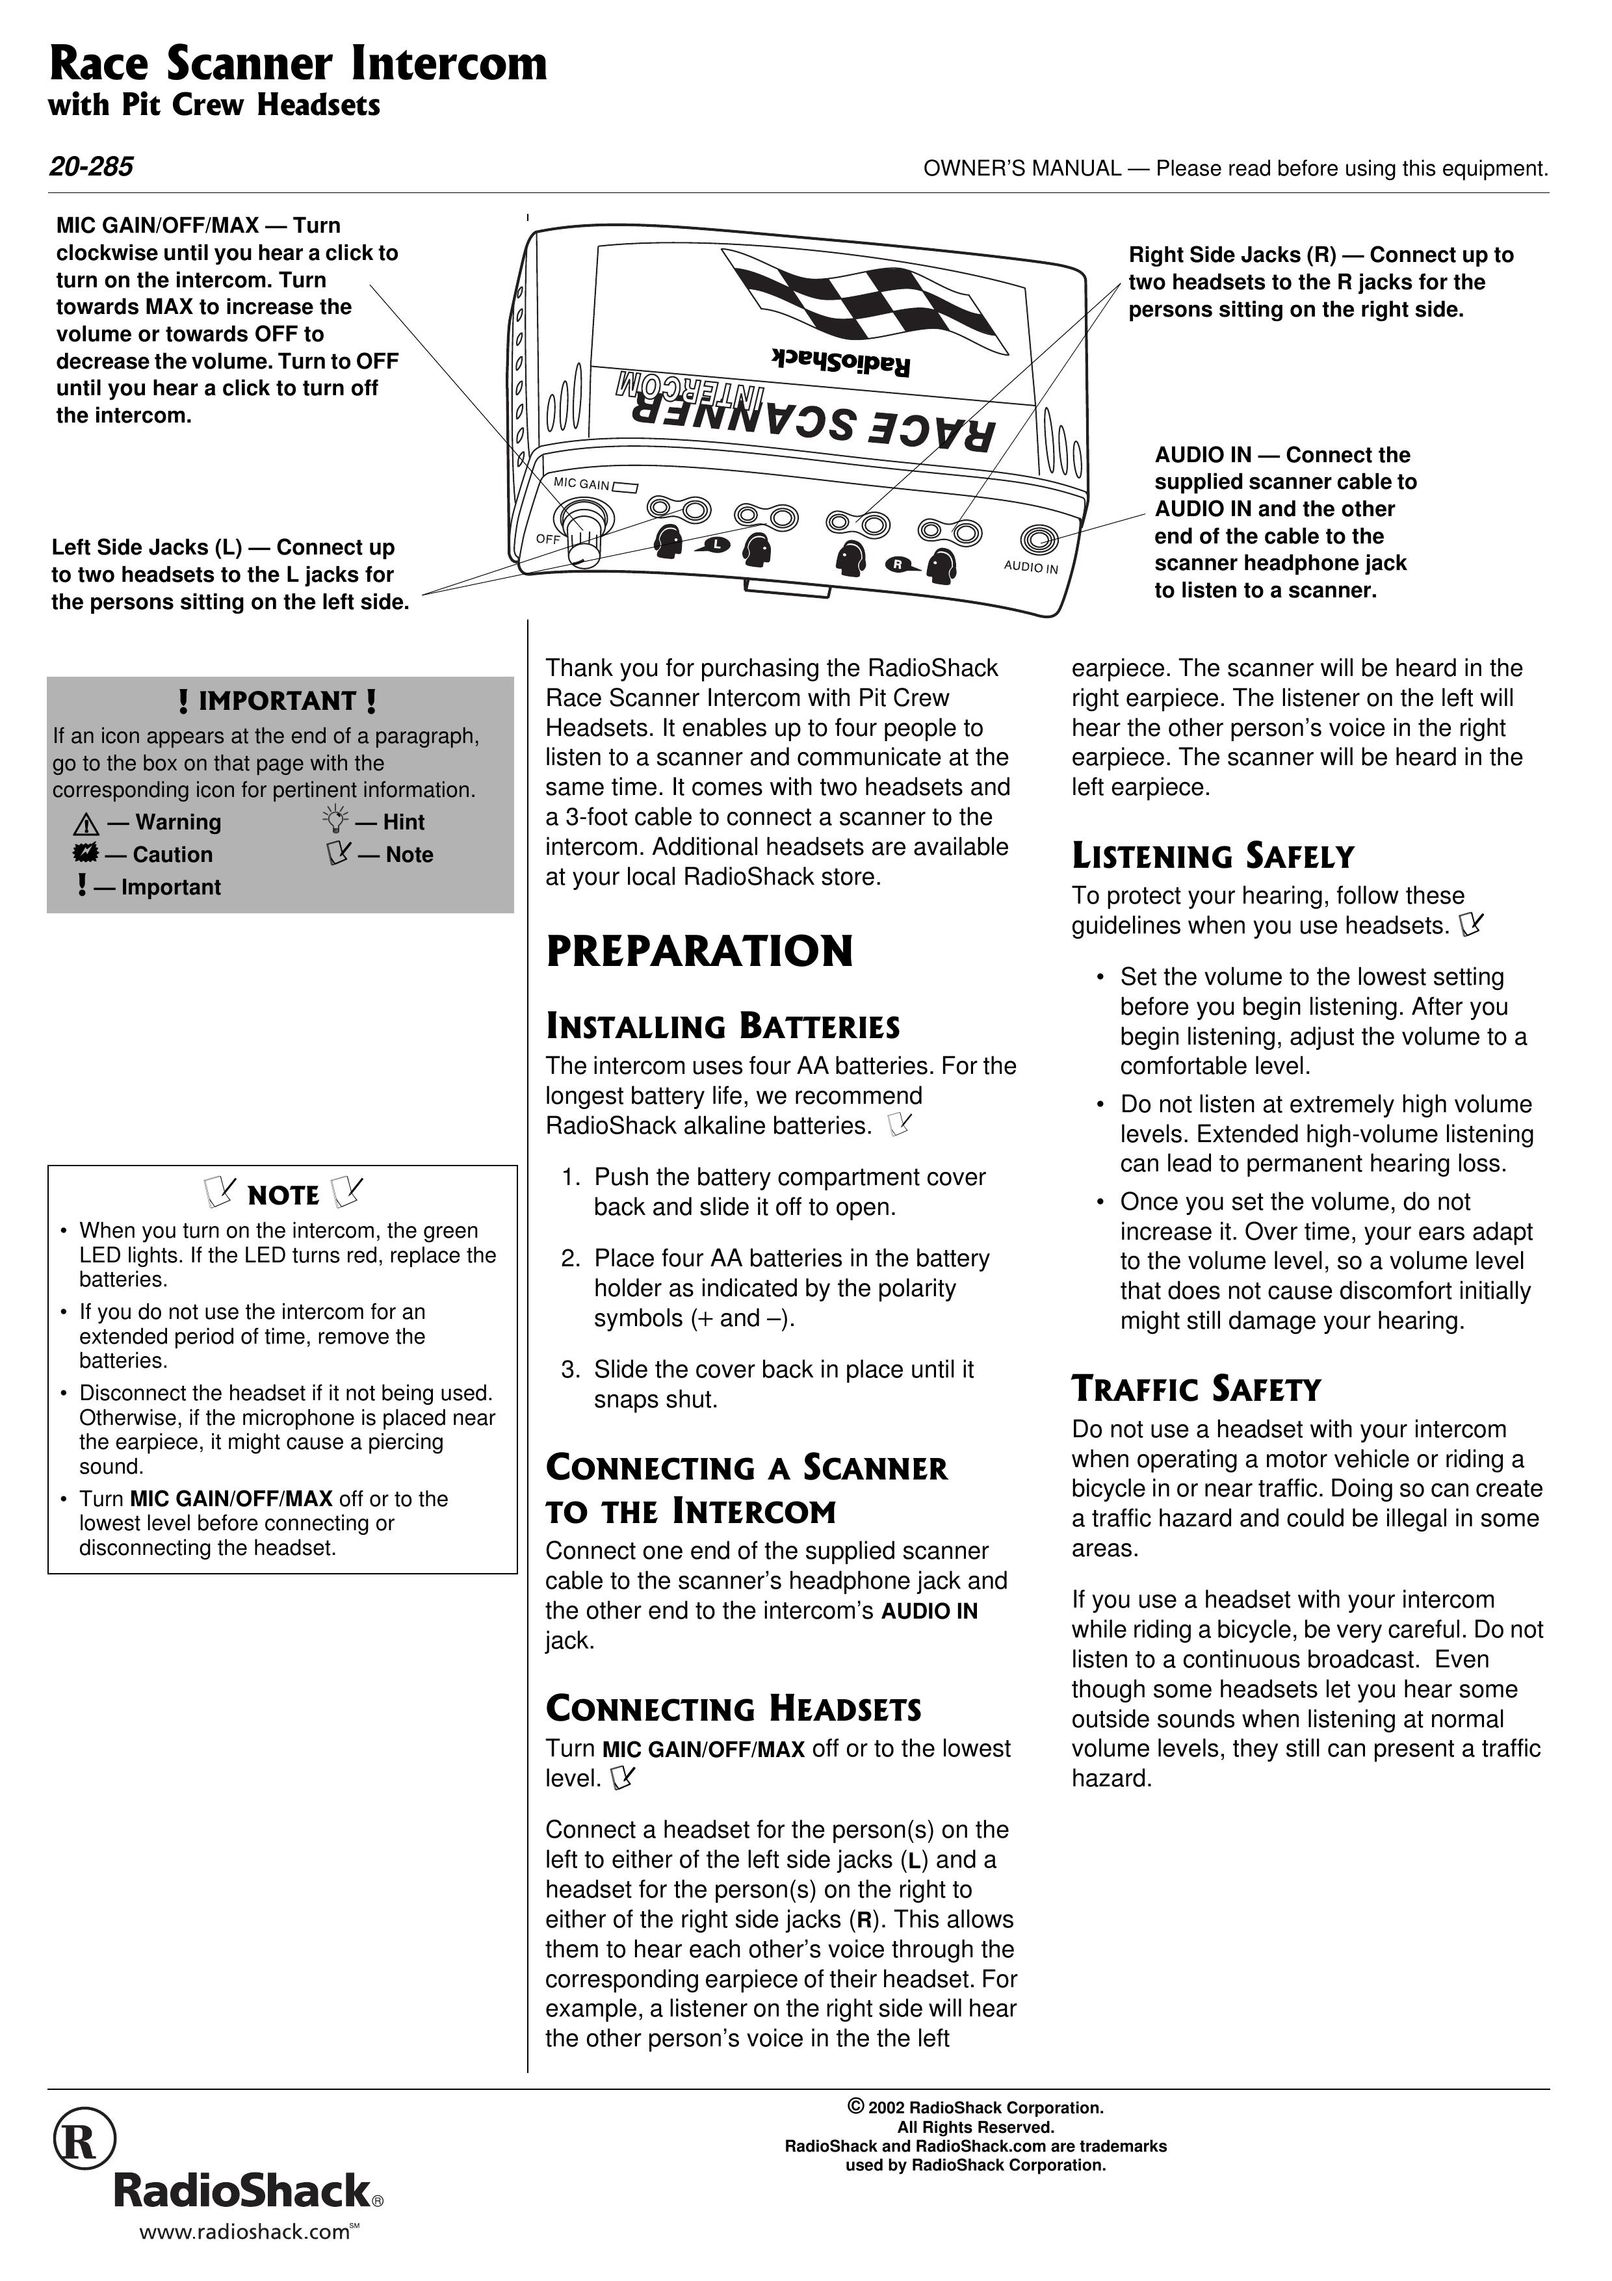 Radio Shack 20-285 Intercom System User Manual